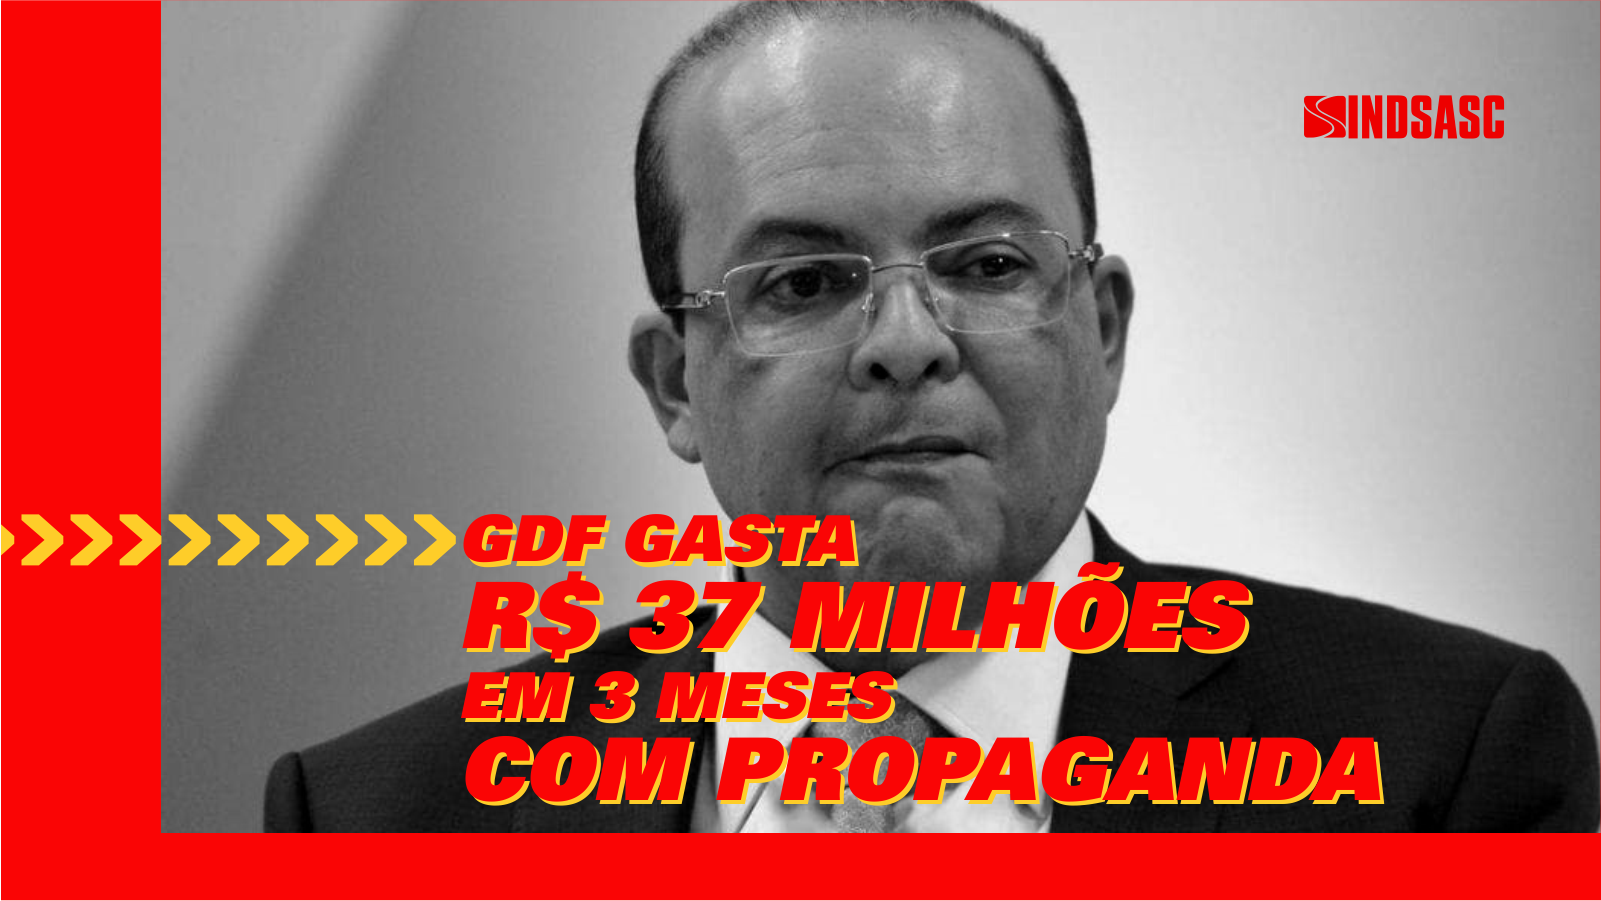 GDF gasta R$ 37 milhões com propaganda em apenas 3 meses